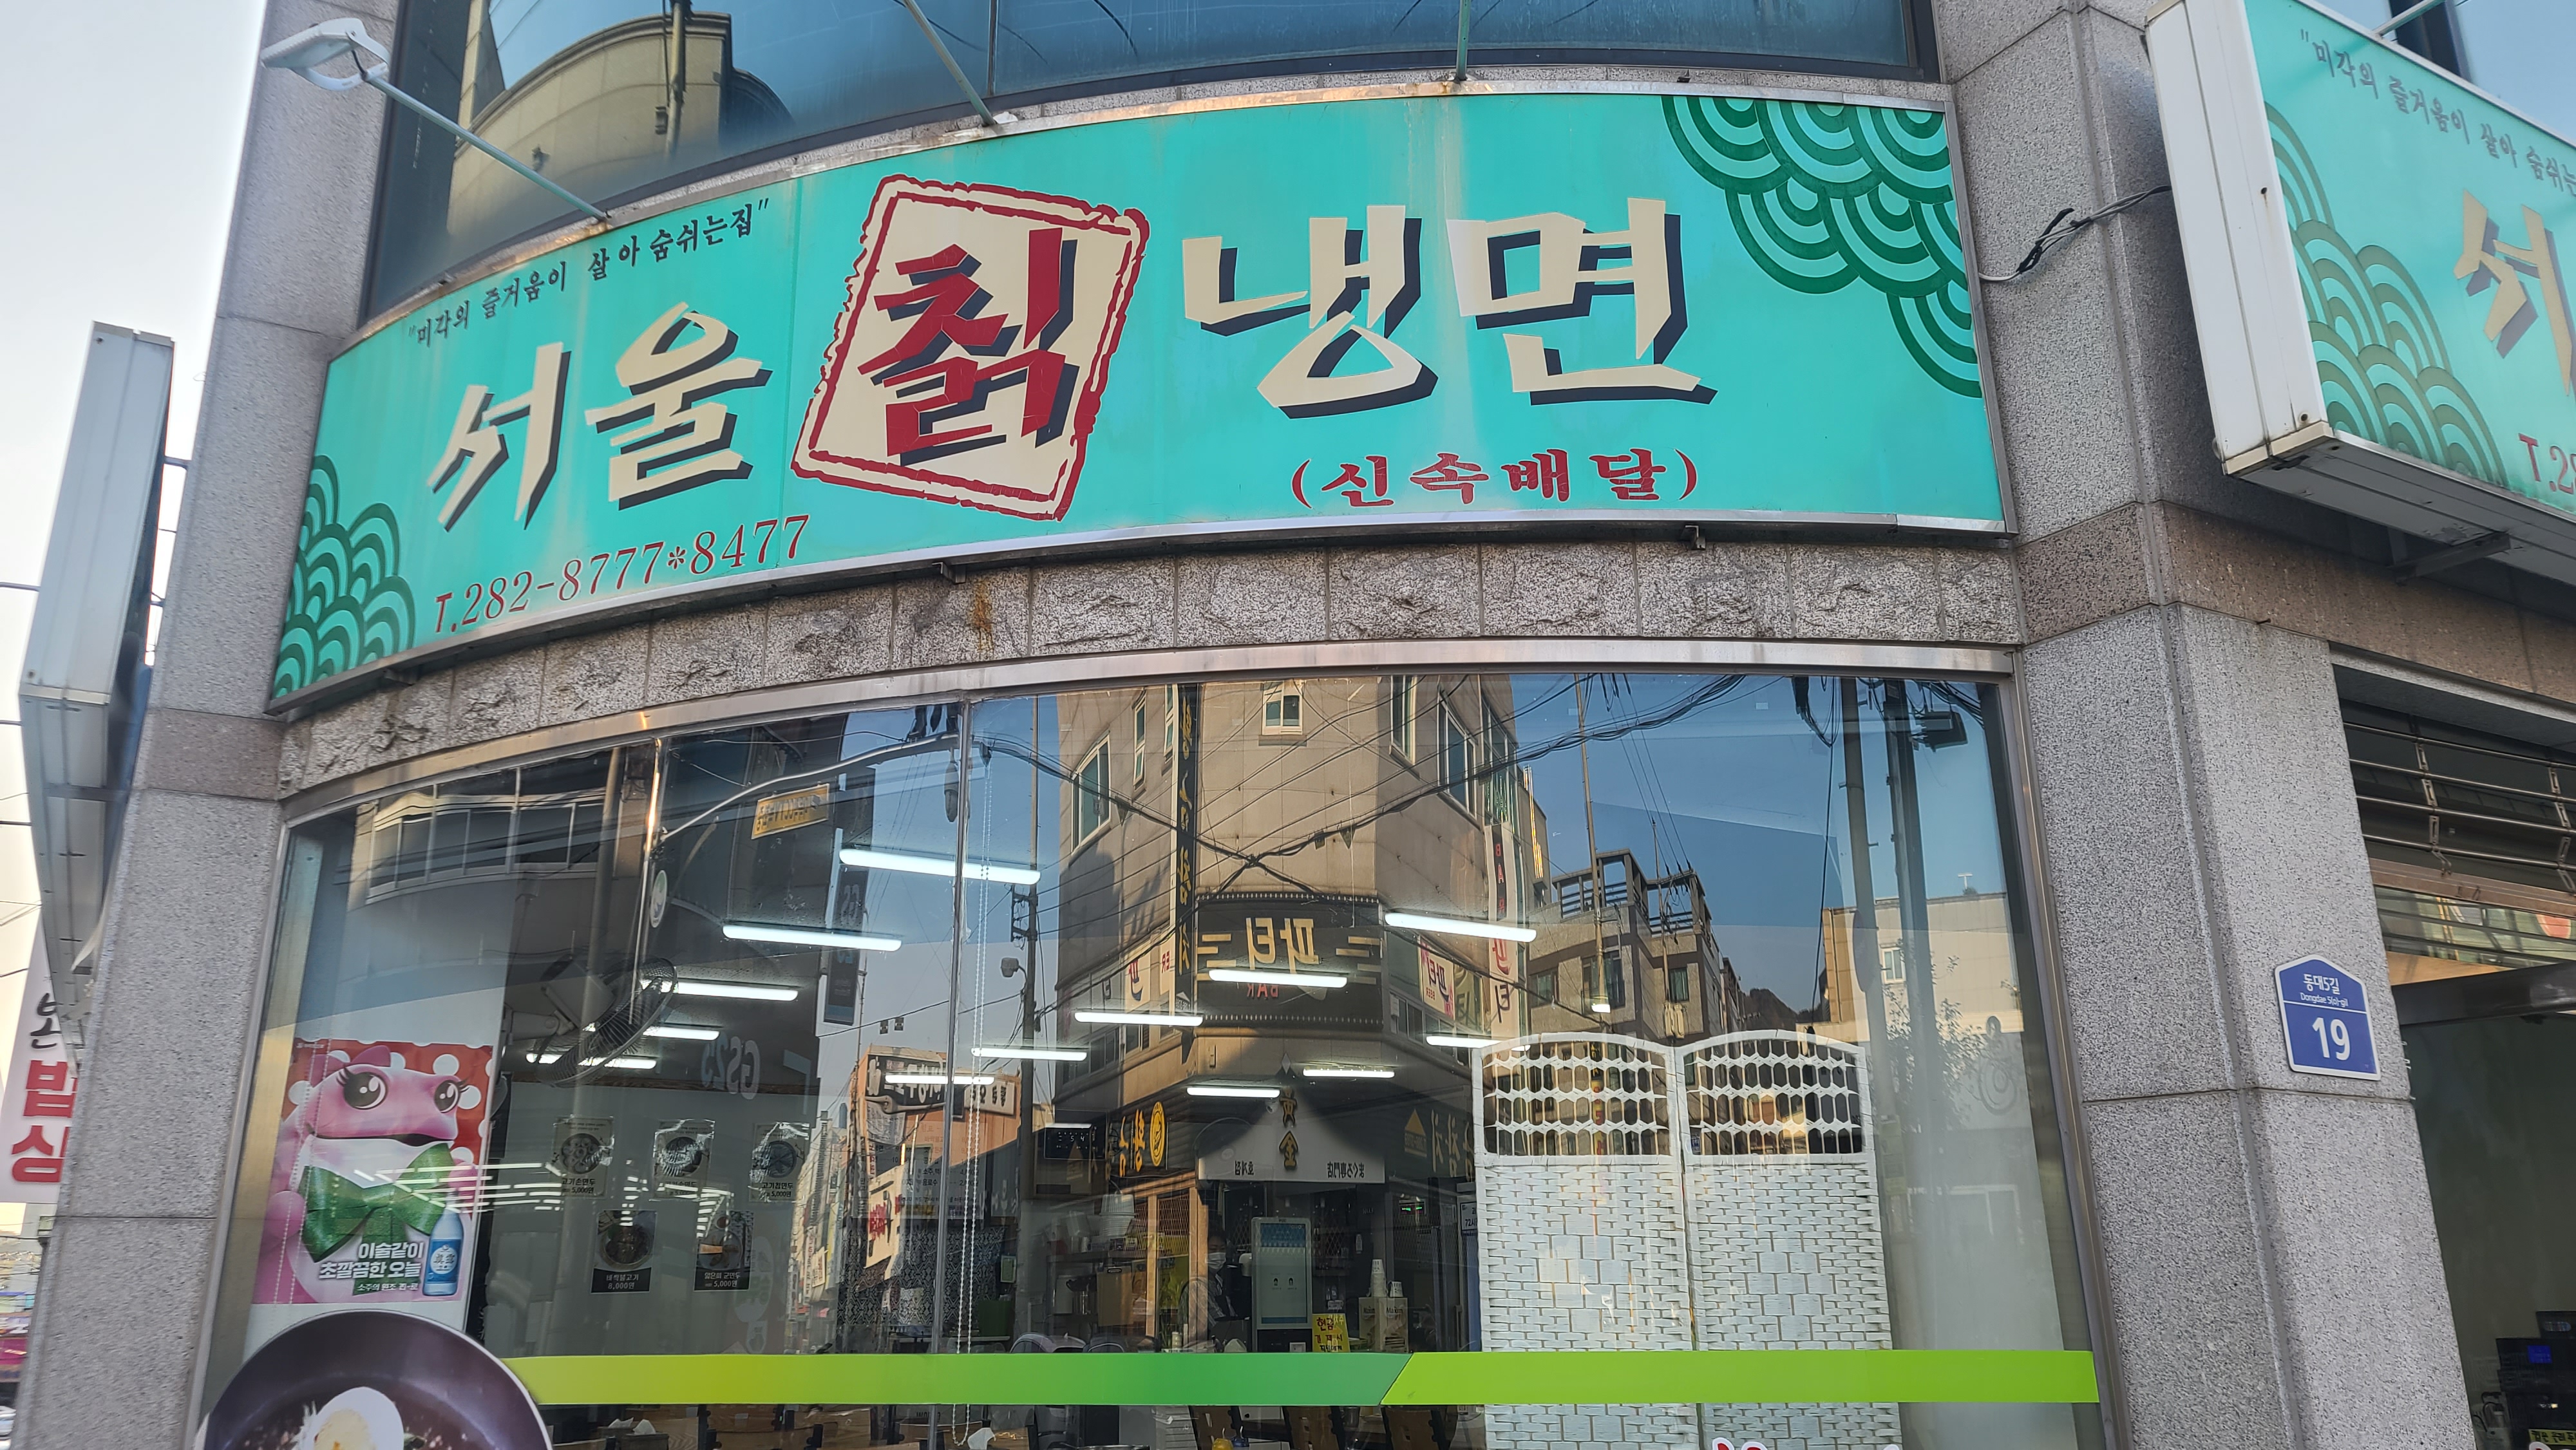 서울 칡 냉면 사진